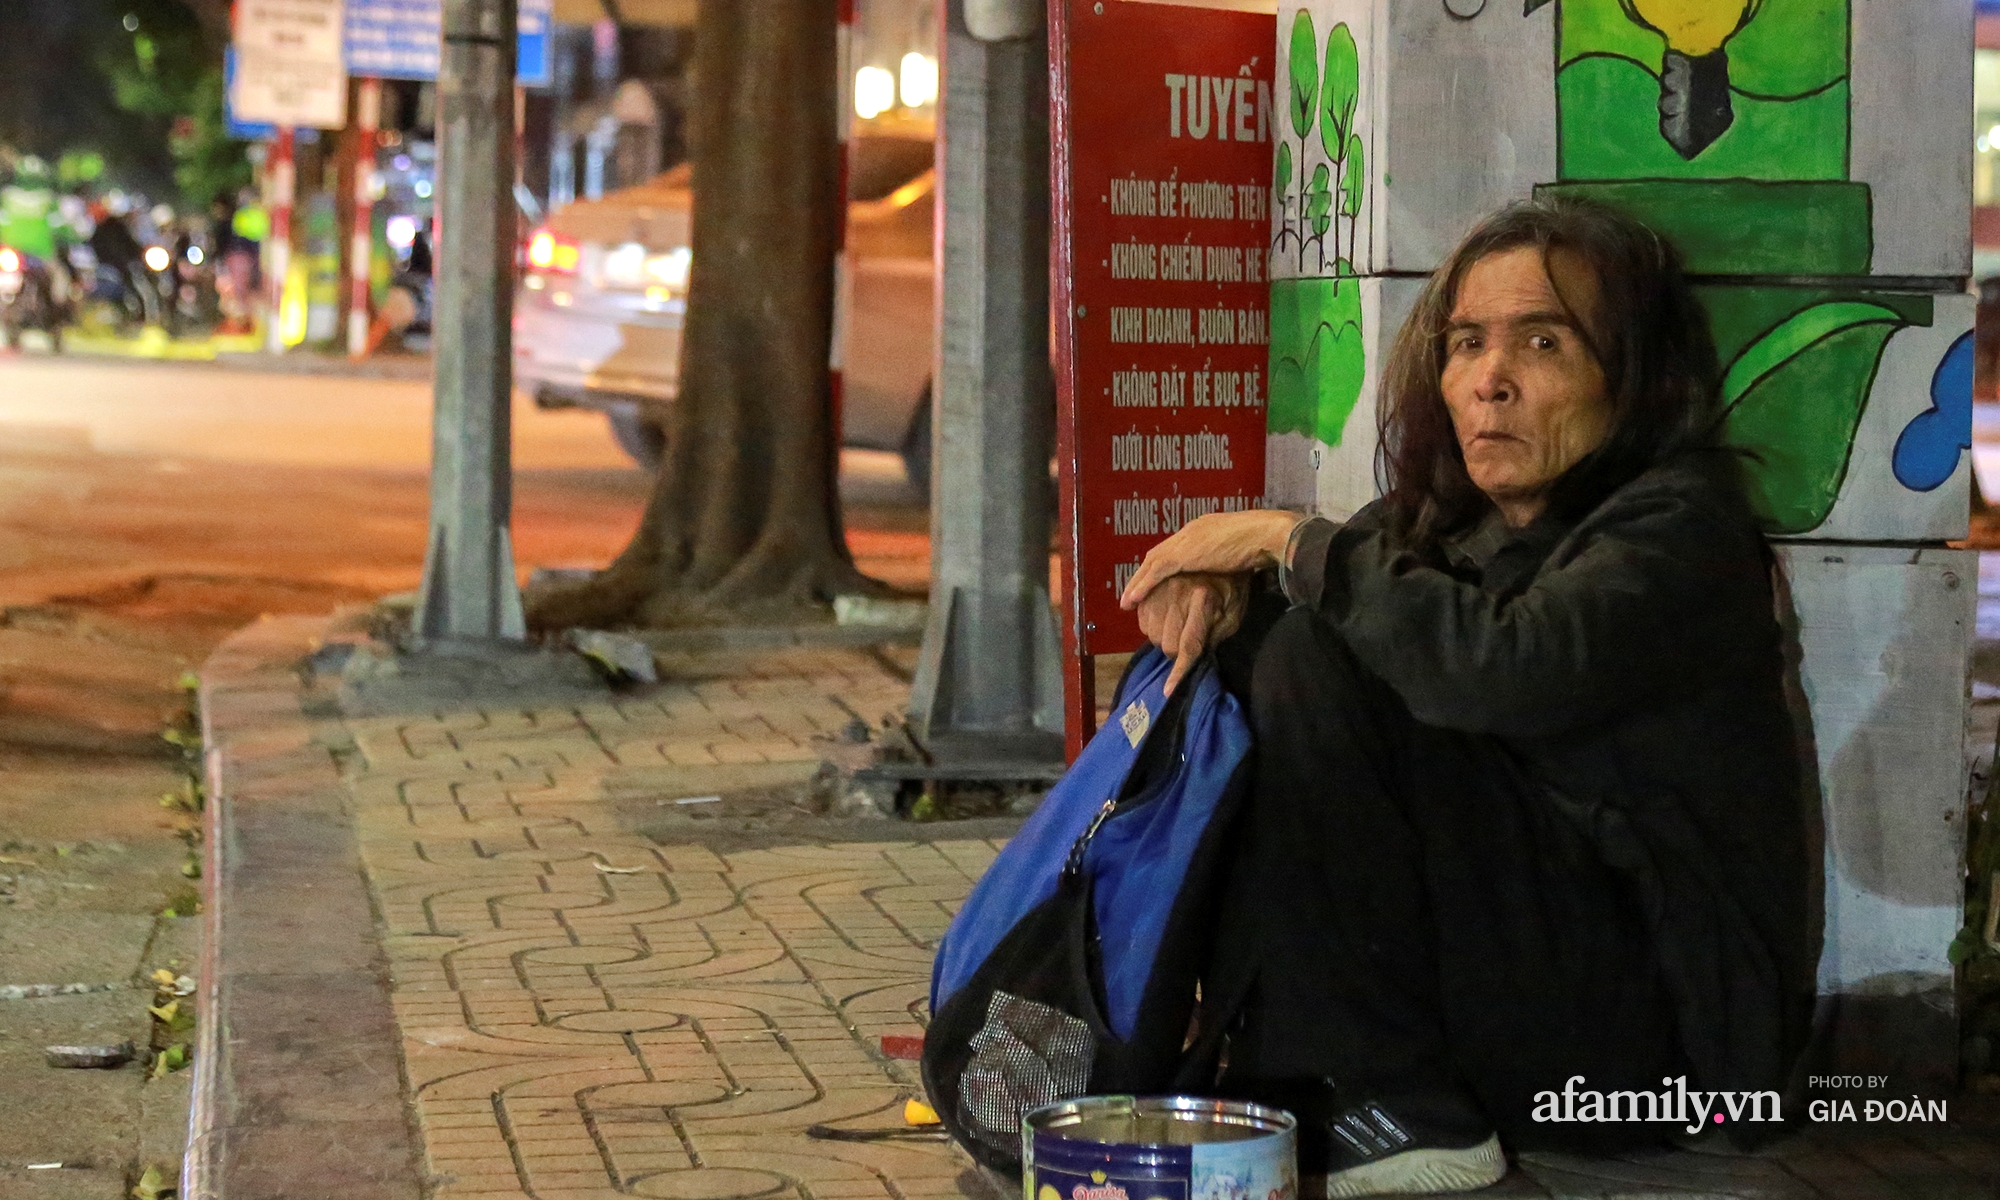 Người vô gia cư trong cái lạnh tê tái của Hà Nội: “Người ta có nhà để về, có con cháu quây quần, tôi mấy chục năm lang thang ngoài đường rồi cũng quen” - Ảnh 9.